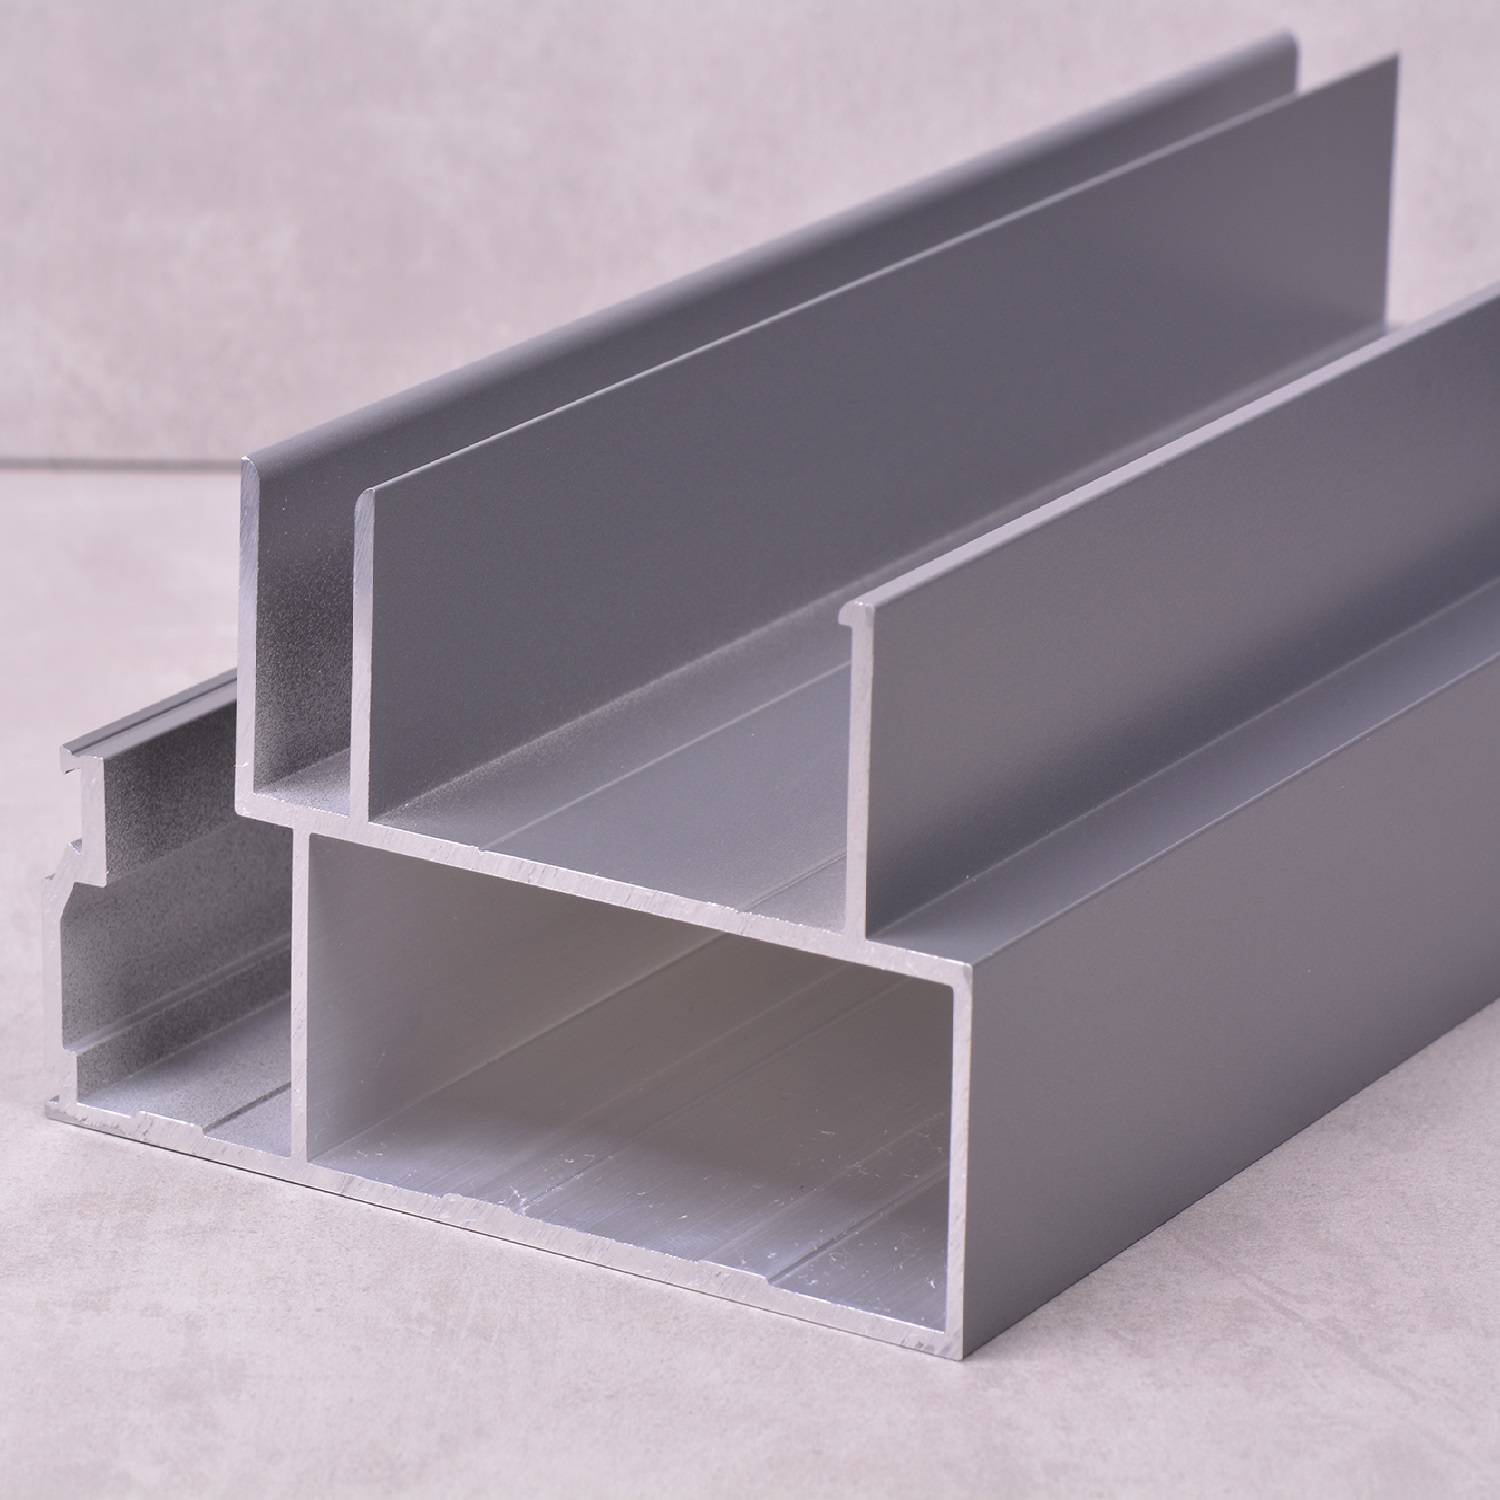 Profils de système de mur-rideau en aluminium personnalisés
